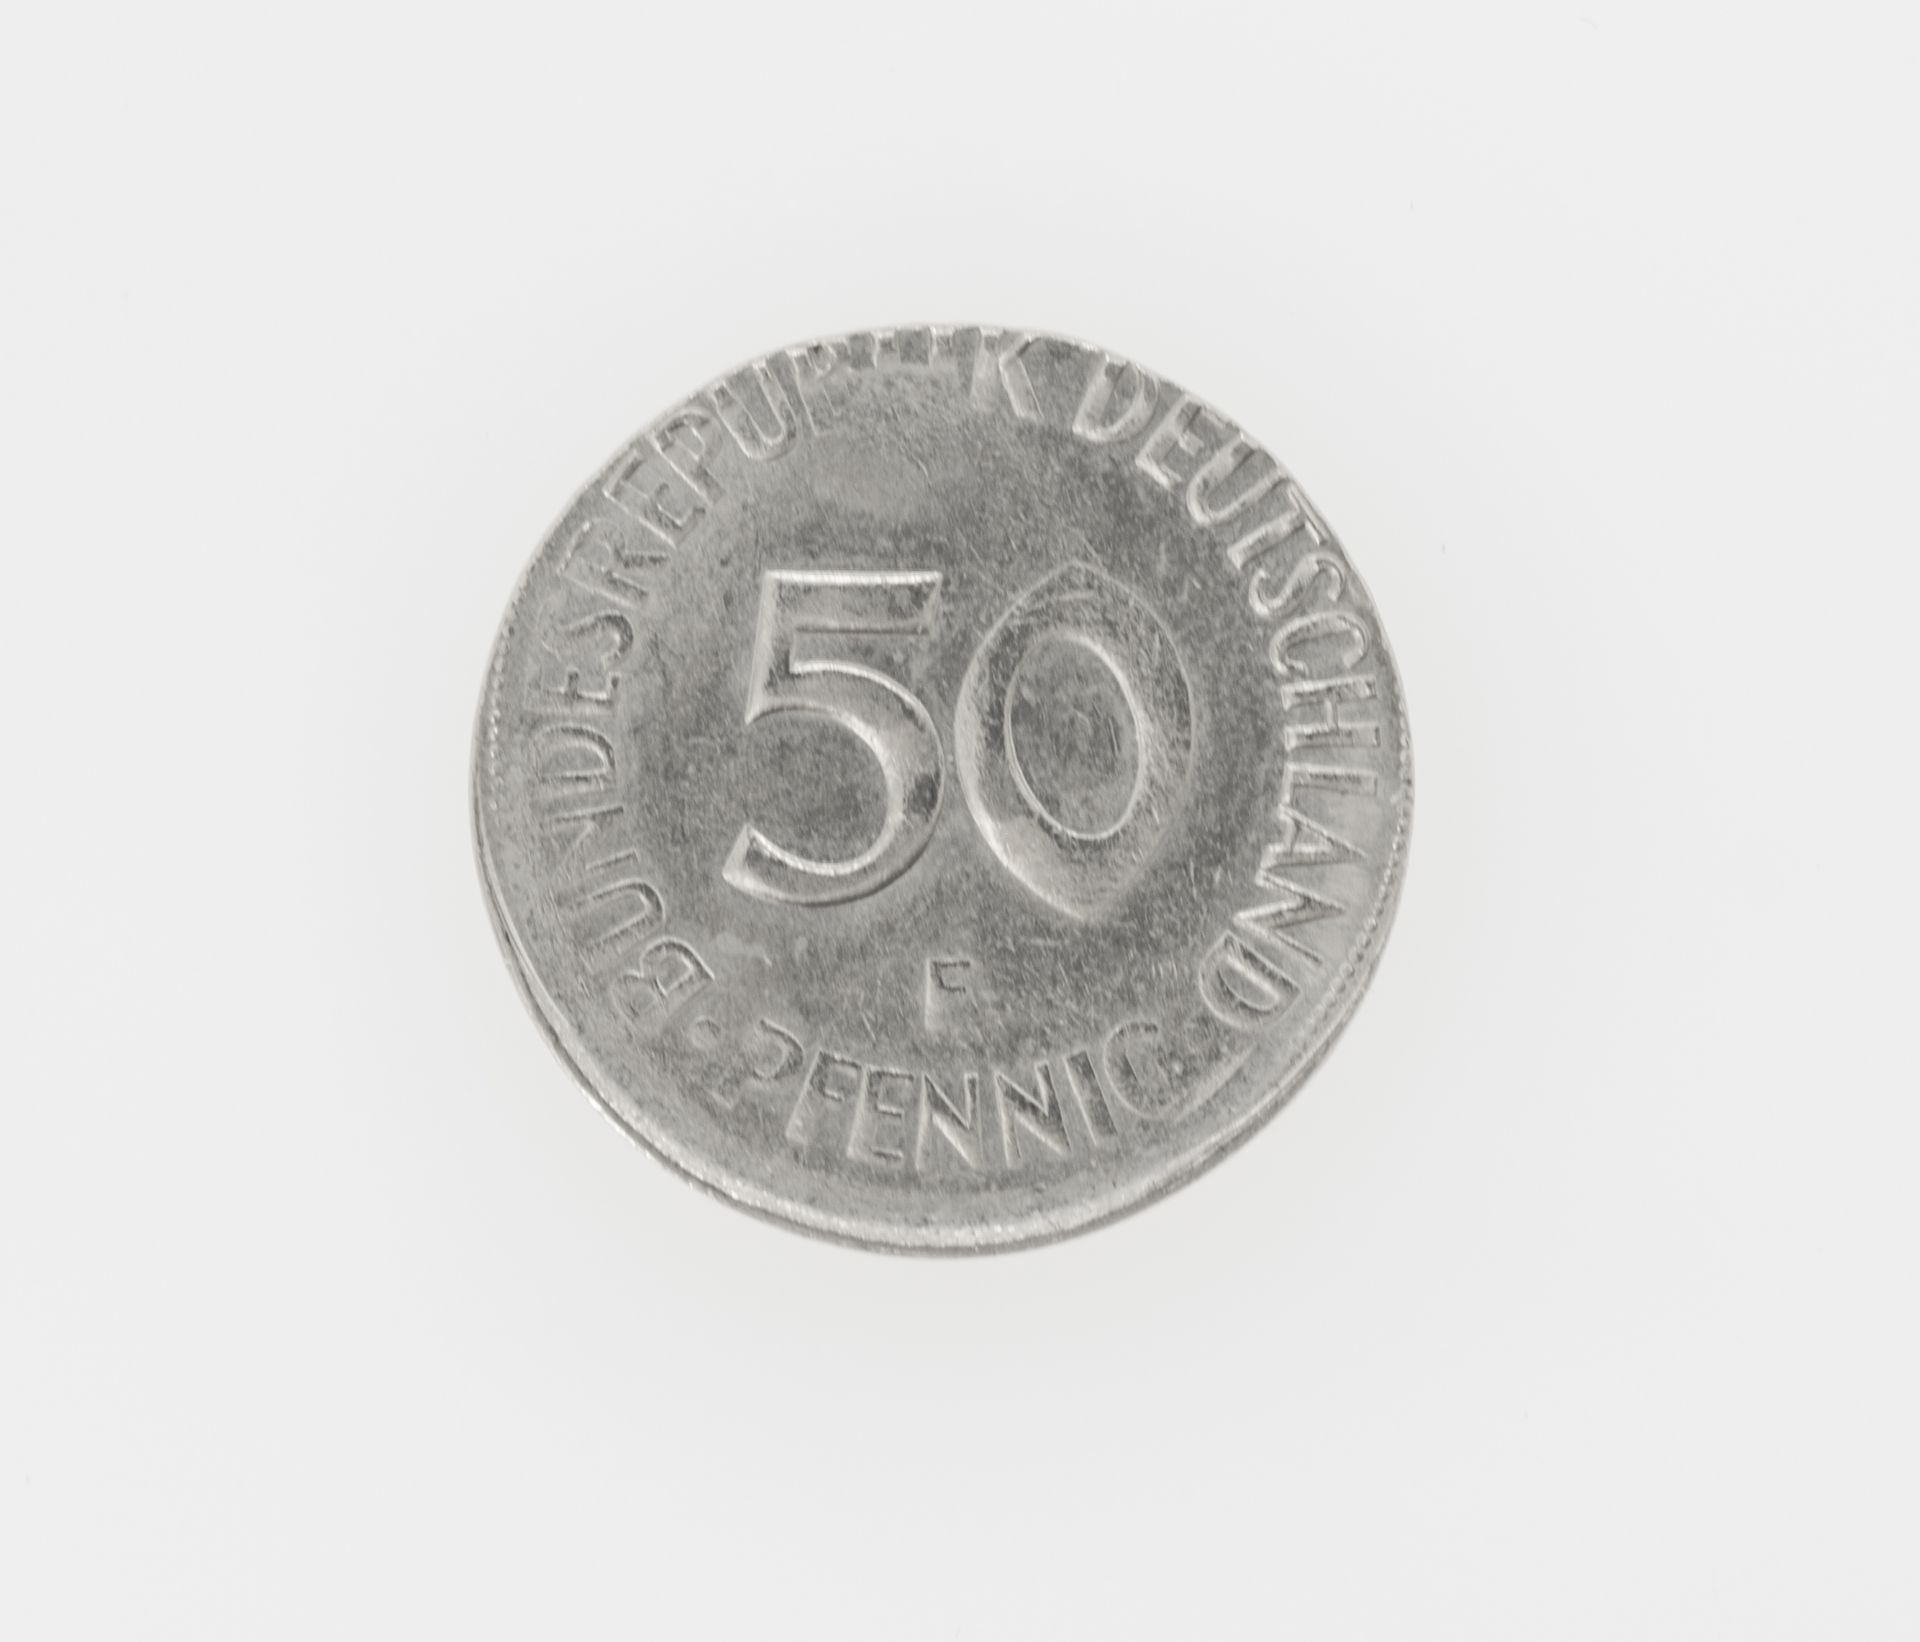 BRD 1980 F, 50 Pfennig - Fehlprägung: beidseitig dezentral geprägt.